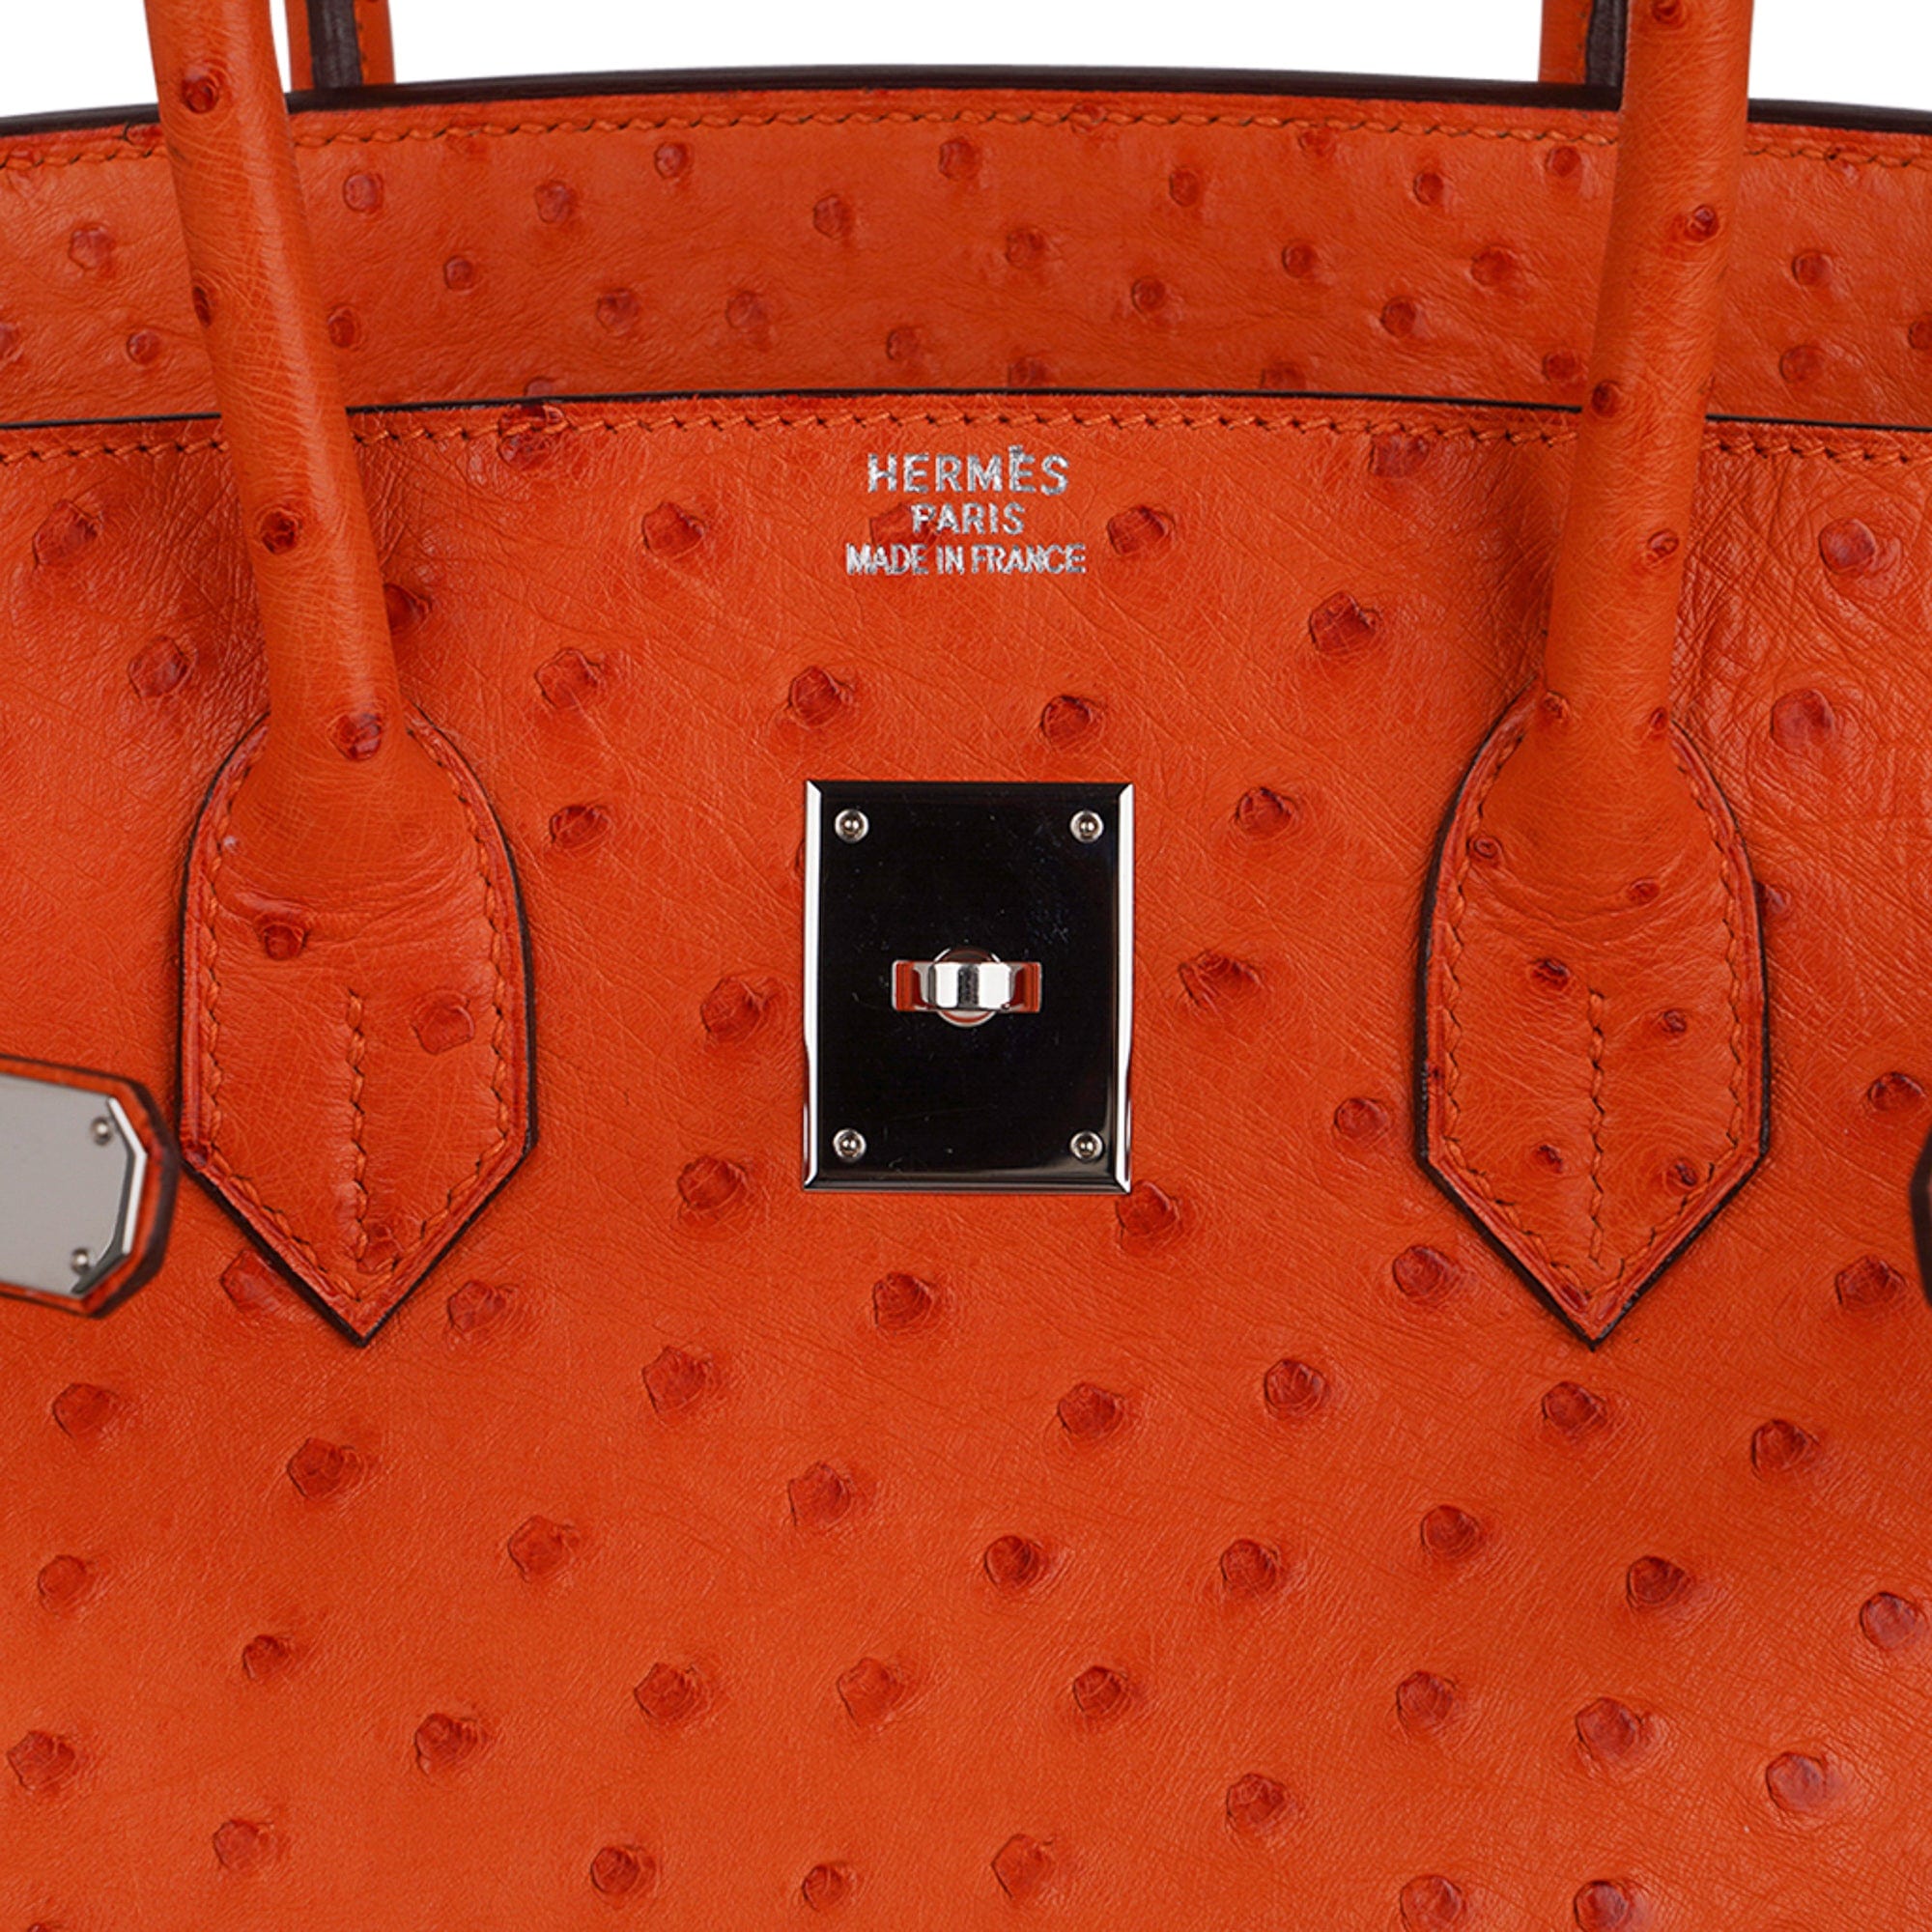 Hermes Birkin 35 Bag Tangerine Ostrich Palladium Hardware Rare